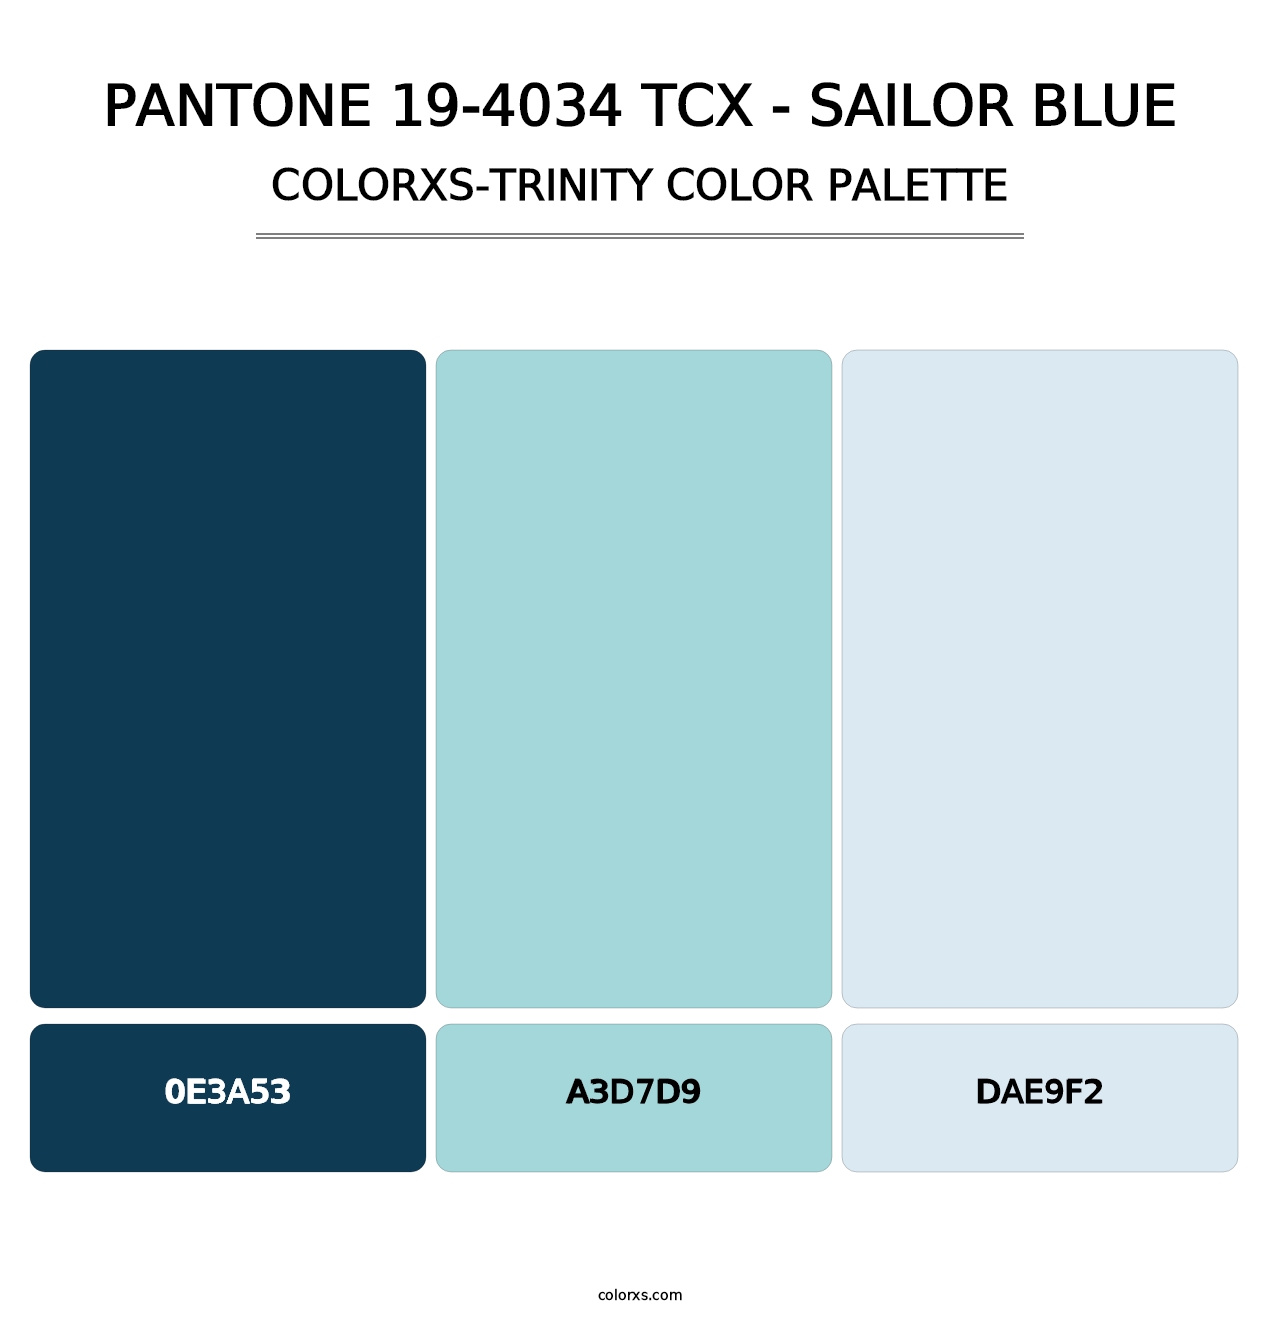 PANTONE 19-4034 TCX - Sailor Blue - Colorxs Trinity Palette